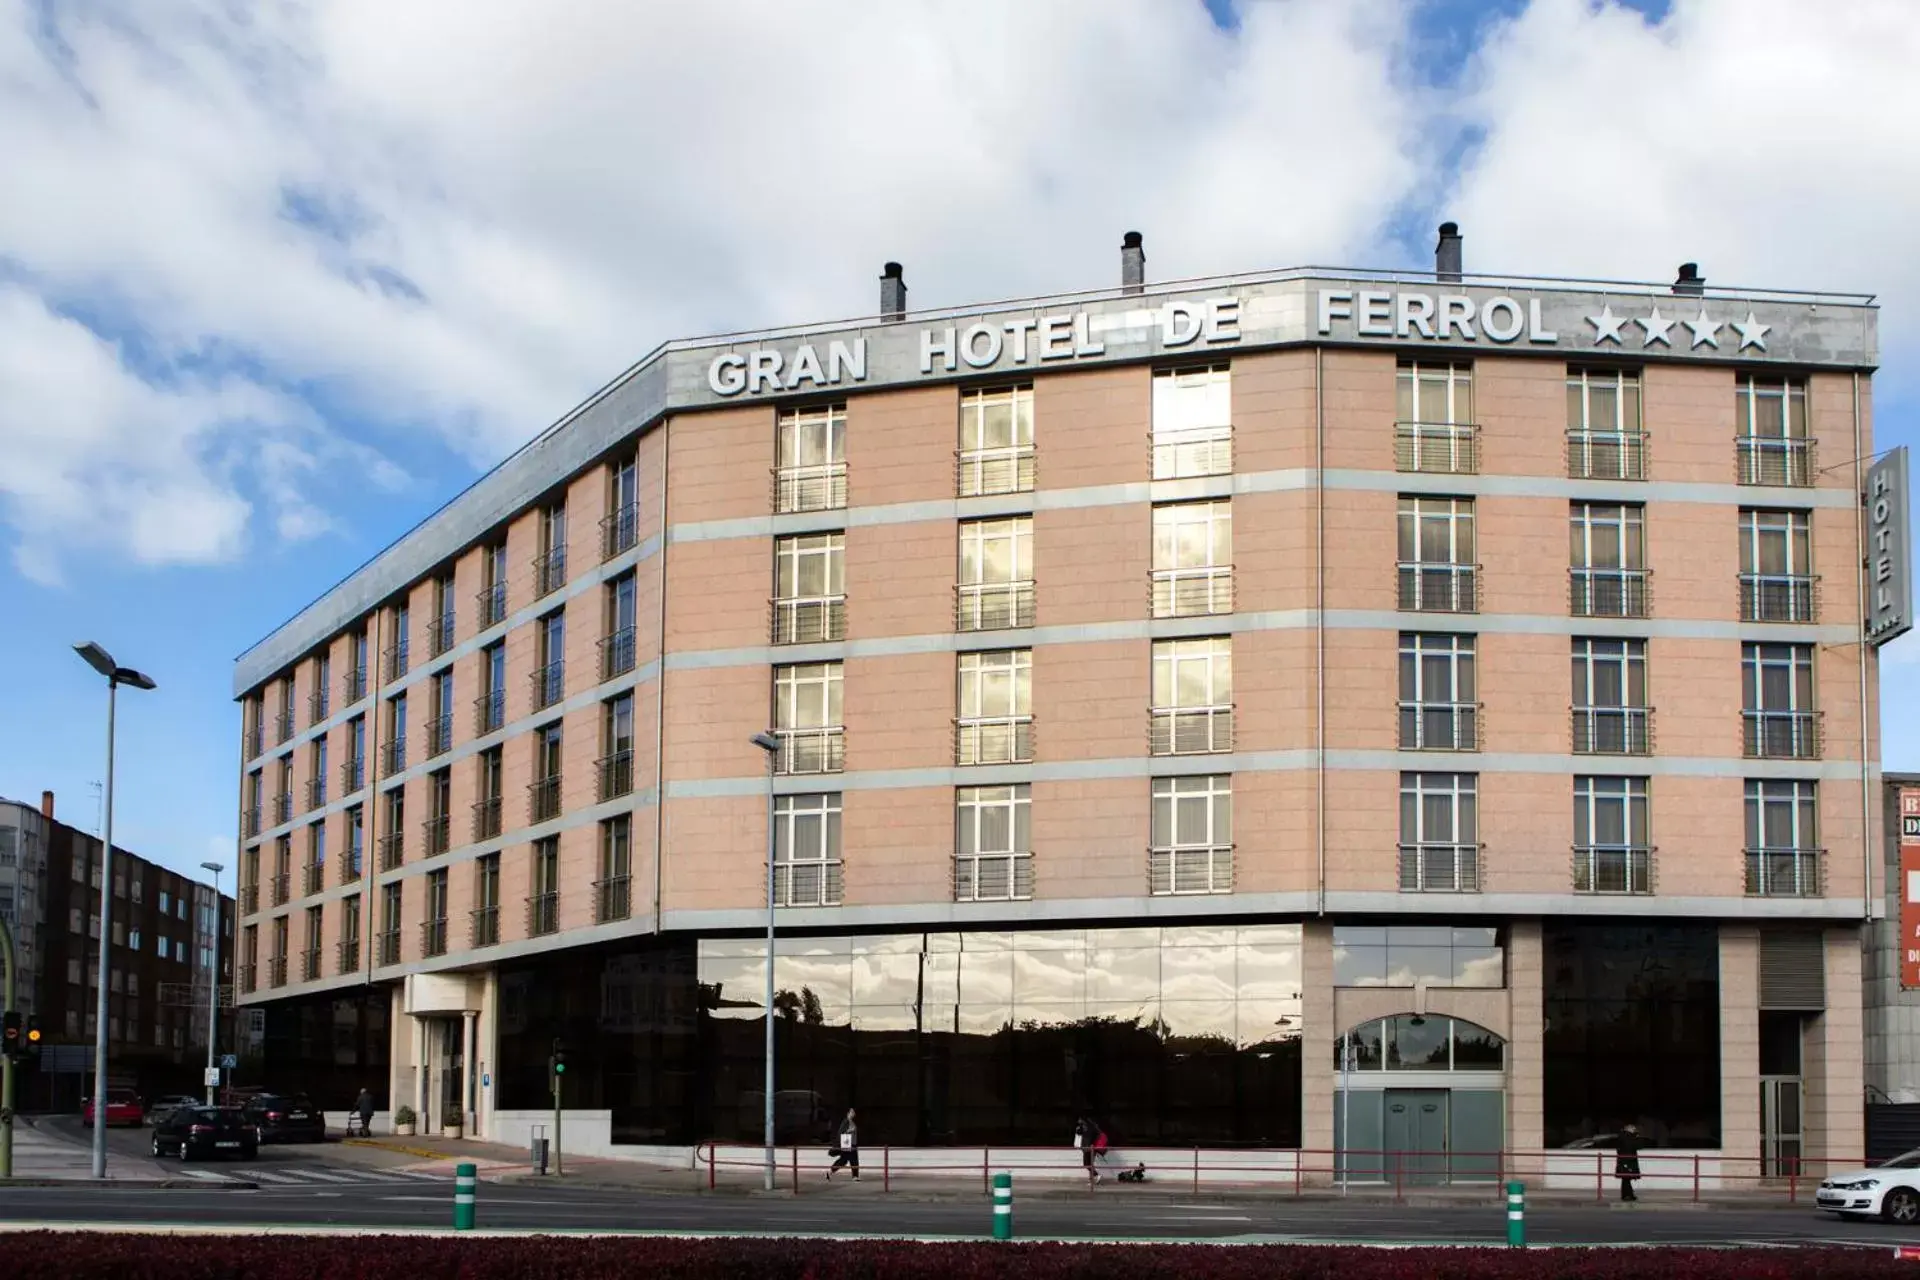 Facade/entrance, Property Building in Gran Hotel de Ferrol